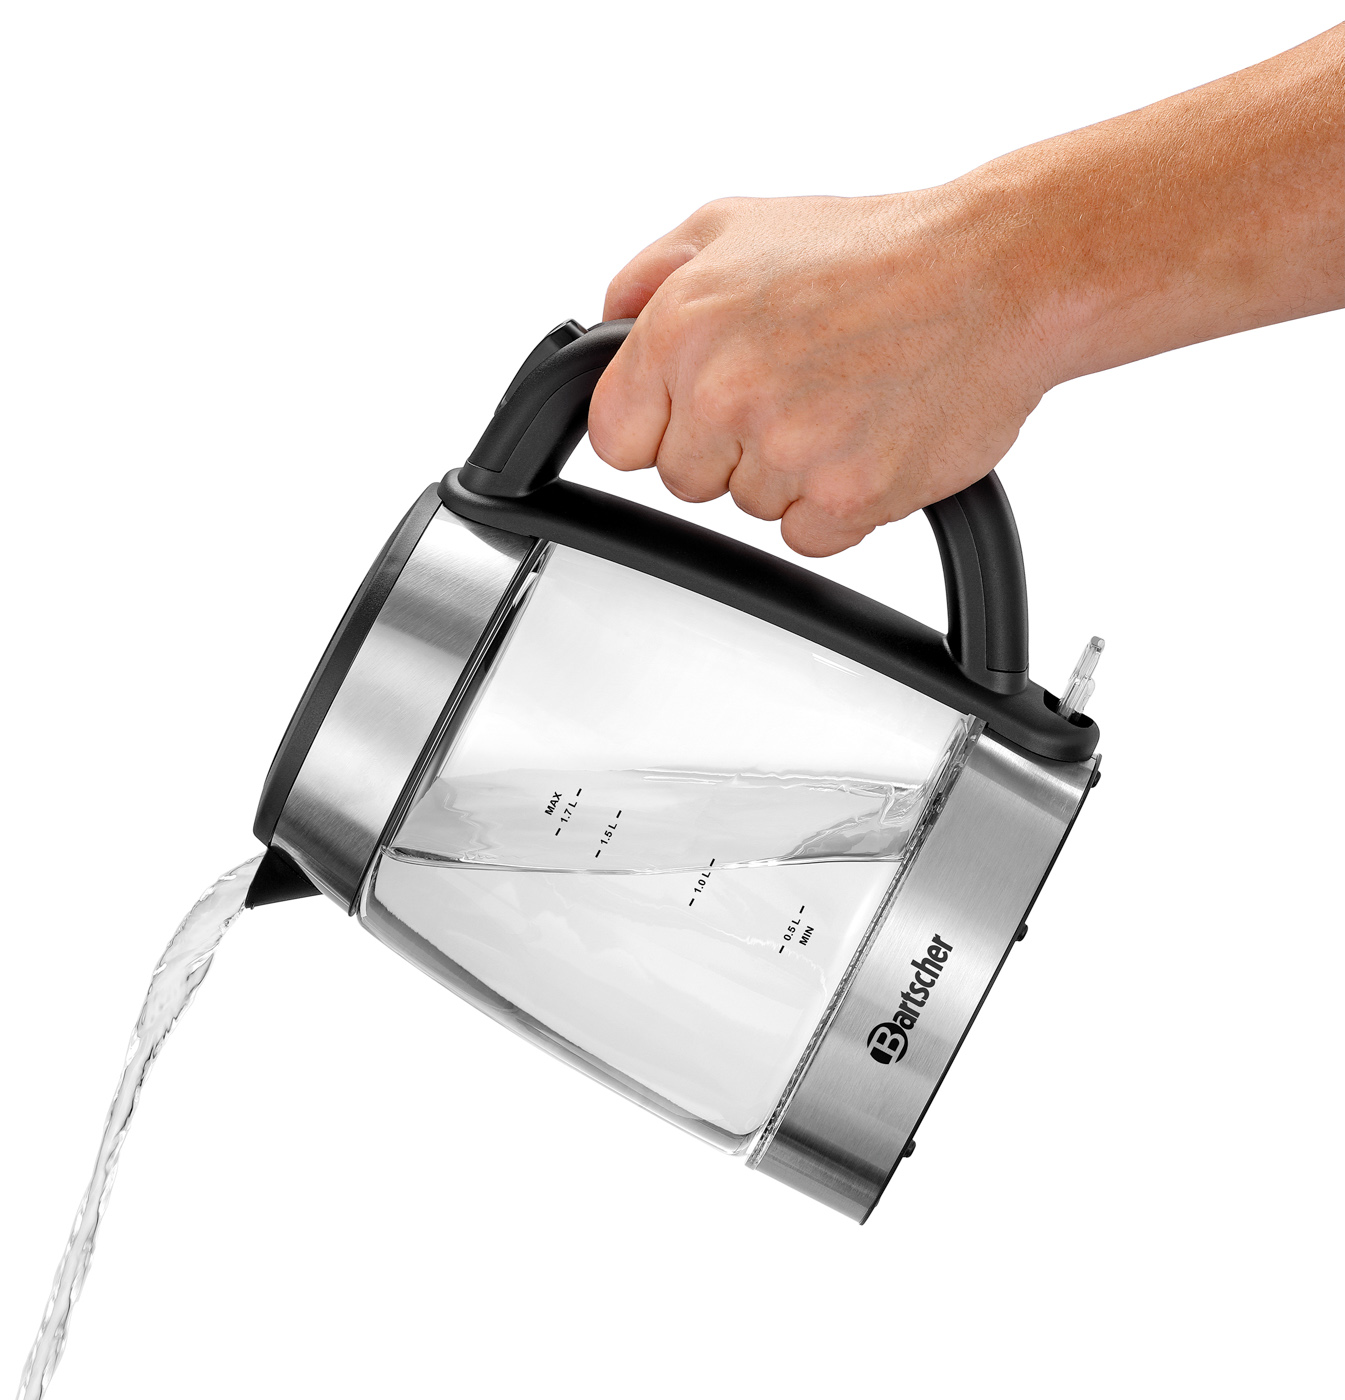 Bartscher Wasserkocher 1,7 GLAS Kochstopp-Automatik: Ja | Maße: 16 x 23 x 235 cm. Gewicht: 1,3 kg